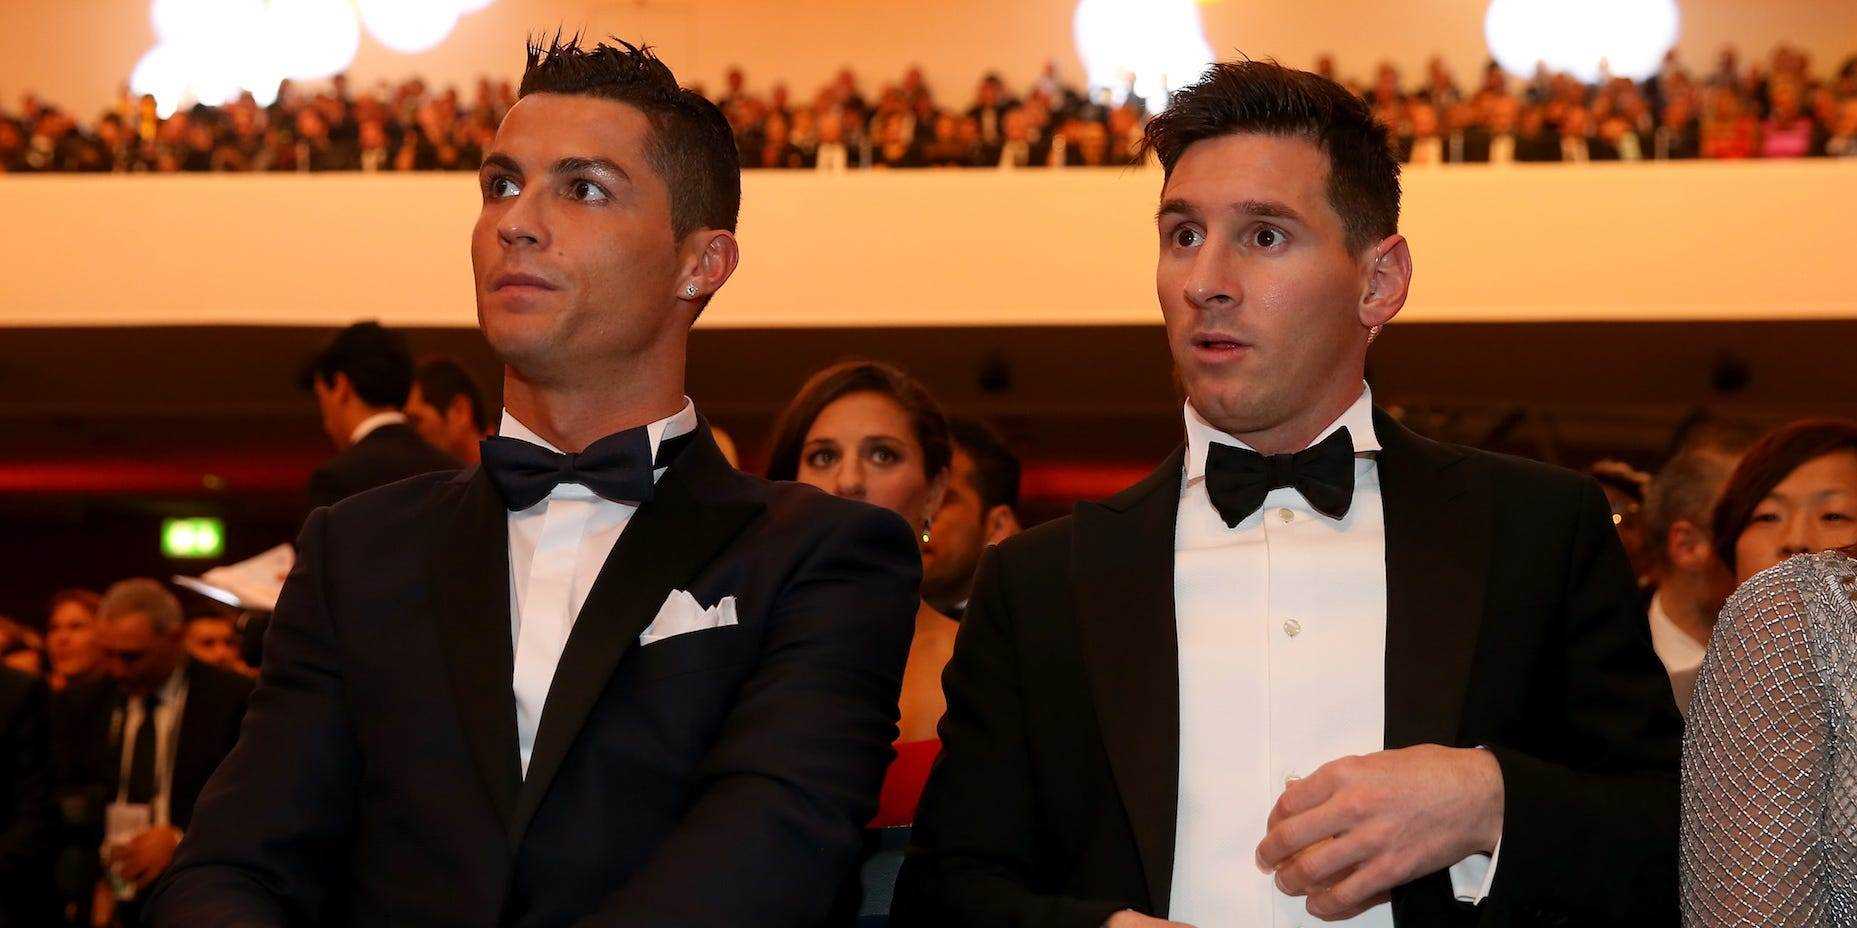 Der für den FIFA Ballon d'Or nominierte Cristiano Ronaldo aus Portugal und Real Madrid sitzt mit dem für den FIFA Ballon d'Or nominierten Lionel Messi aus Argentinien und Barcelona während der FIFA Ballon d'Or Gala 2015 im Kongresshaus